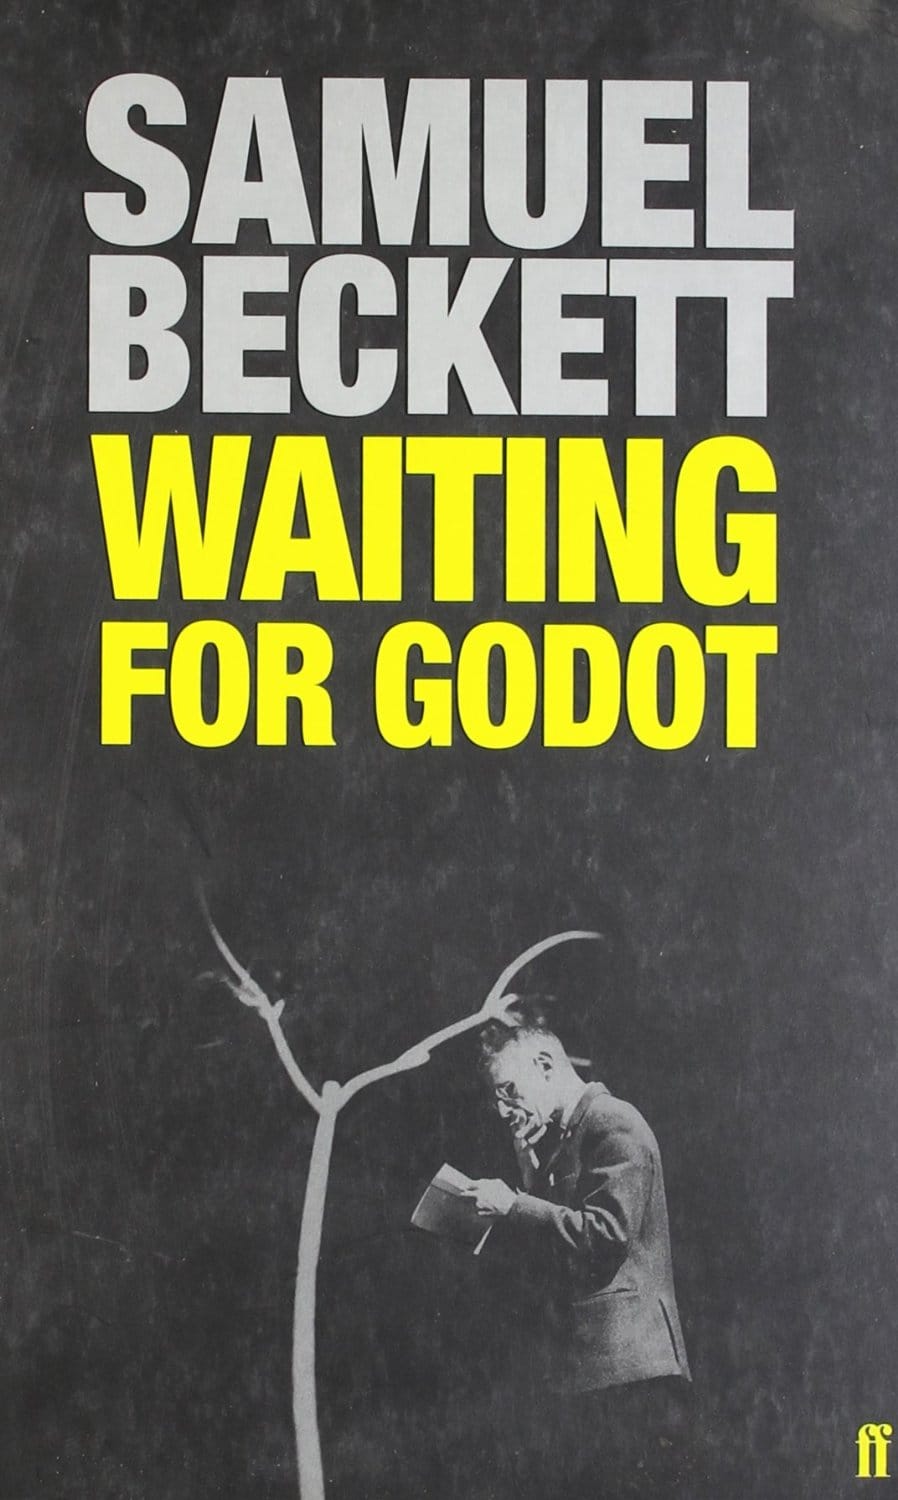 http://ilarge.lisimg.com/image/7405227/898full-beckett-directs-beckett%3A-waiting-for-godot-by-samuel-beckett-poster.jpg